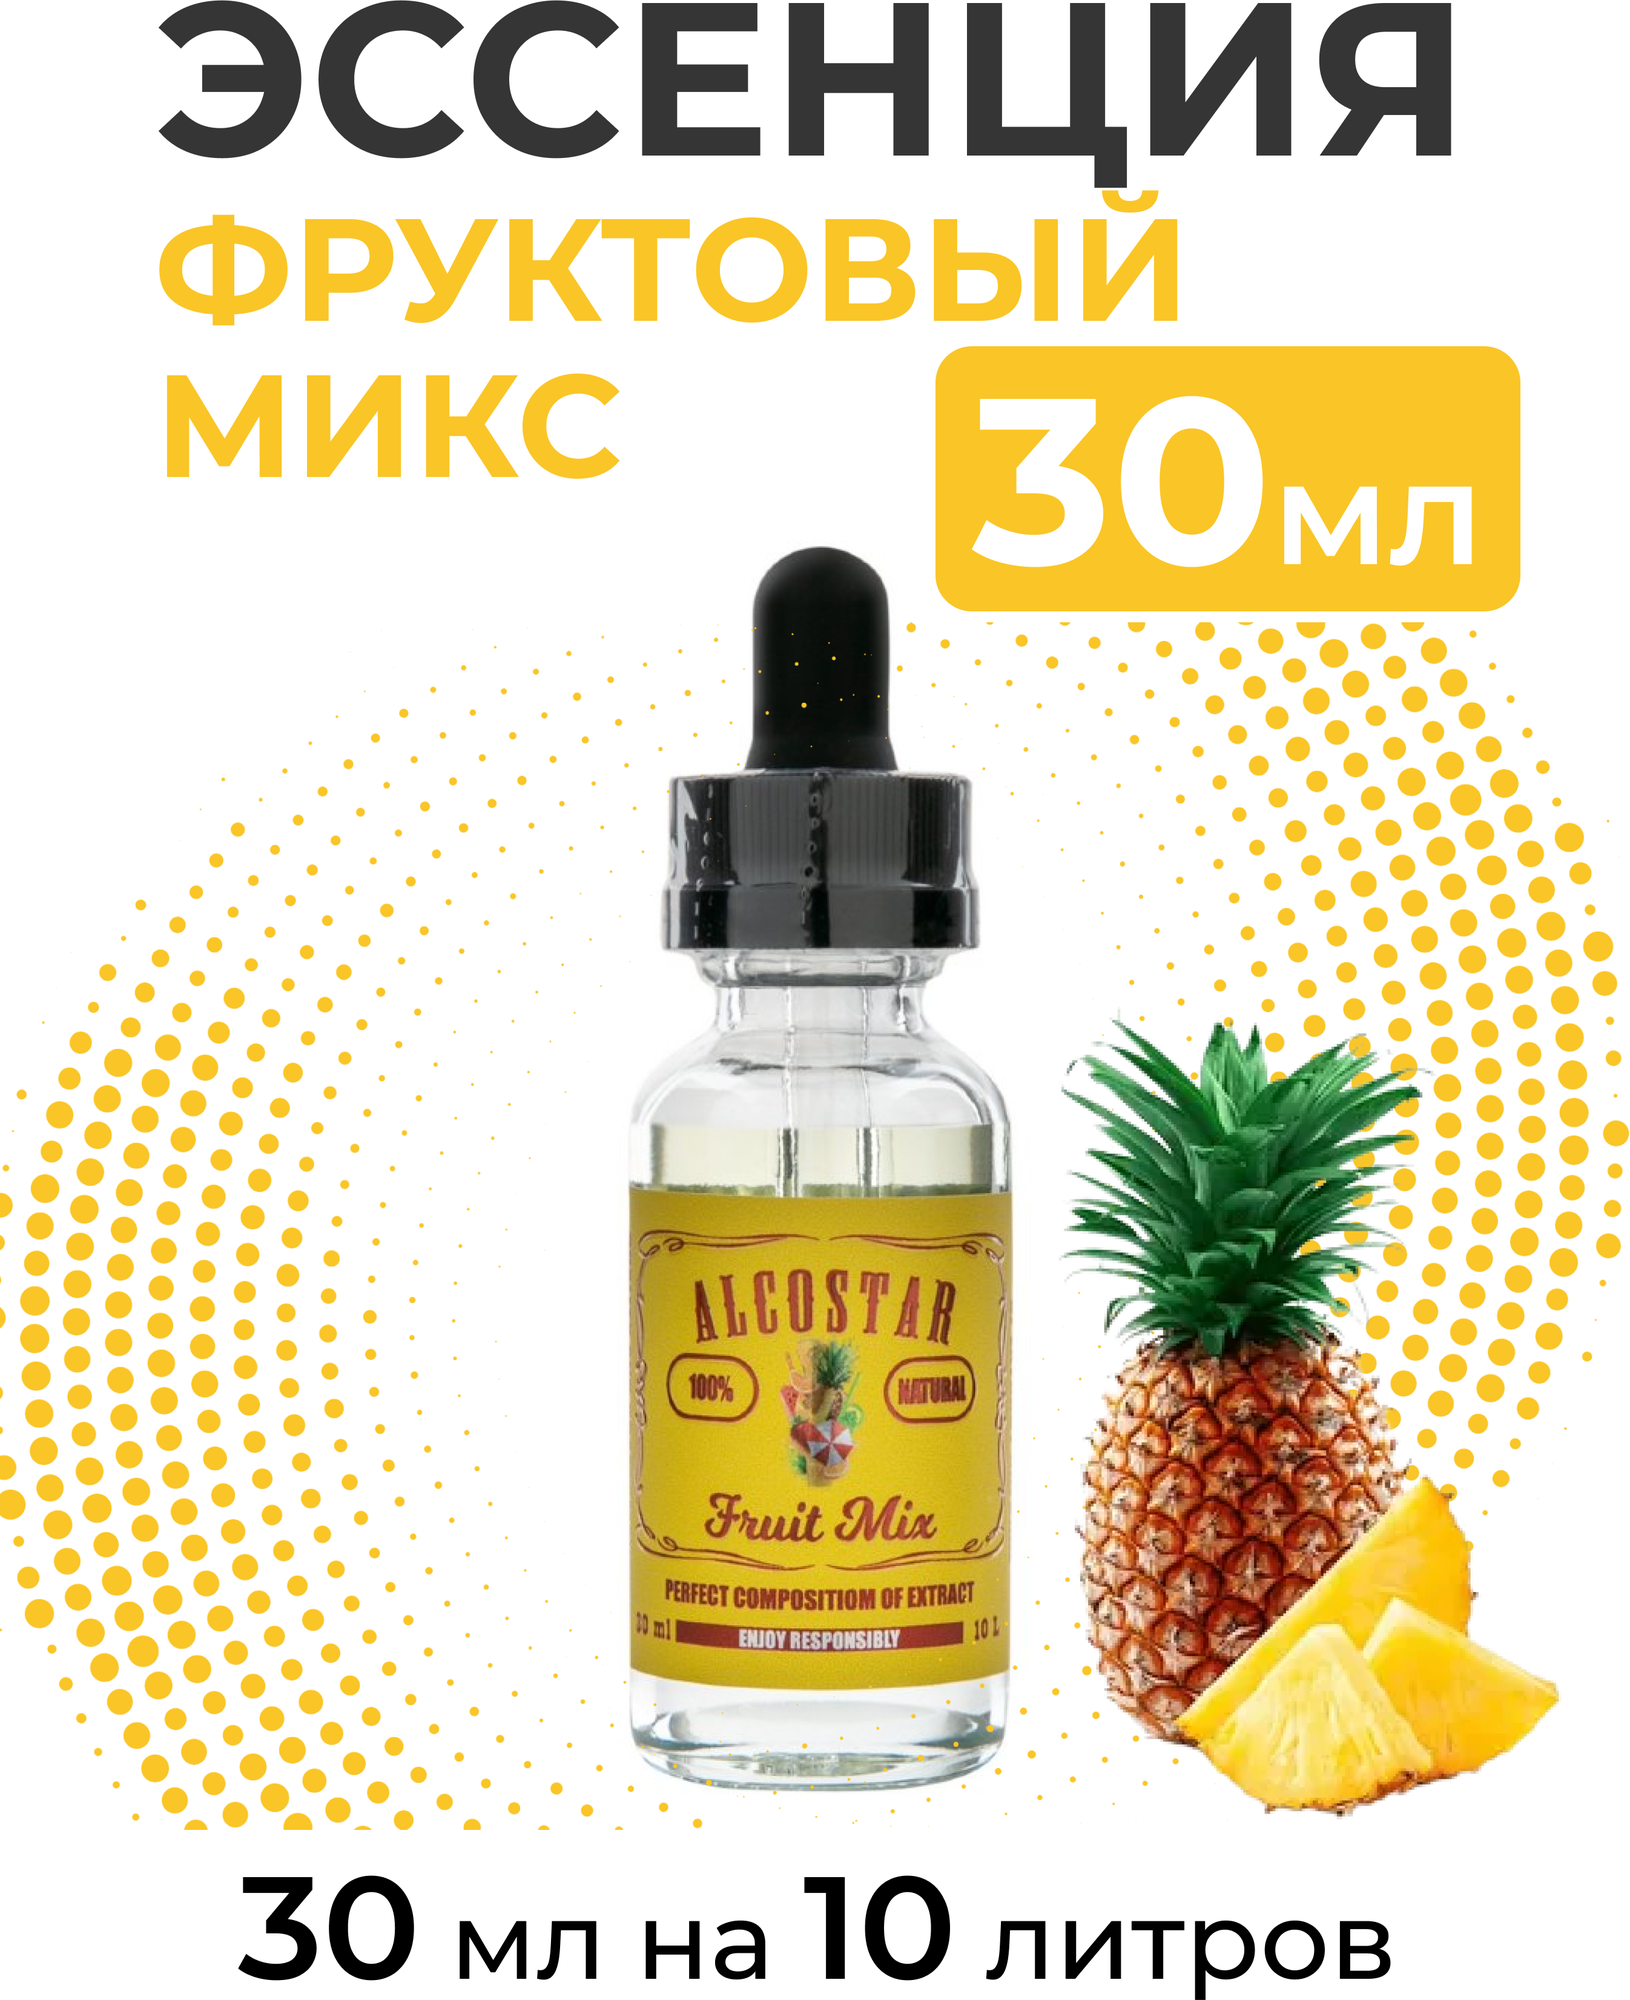 Эссенция Фруктовый микс Fruit Mix Alcostar вкусовой концентрат (ароматизатор пищевой) для самогона 30 мл